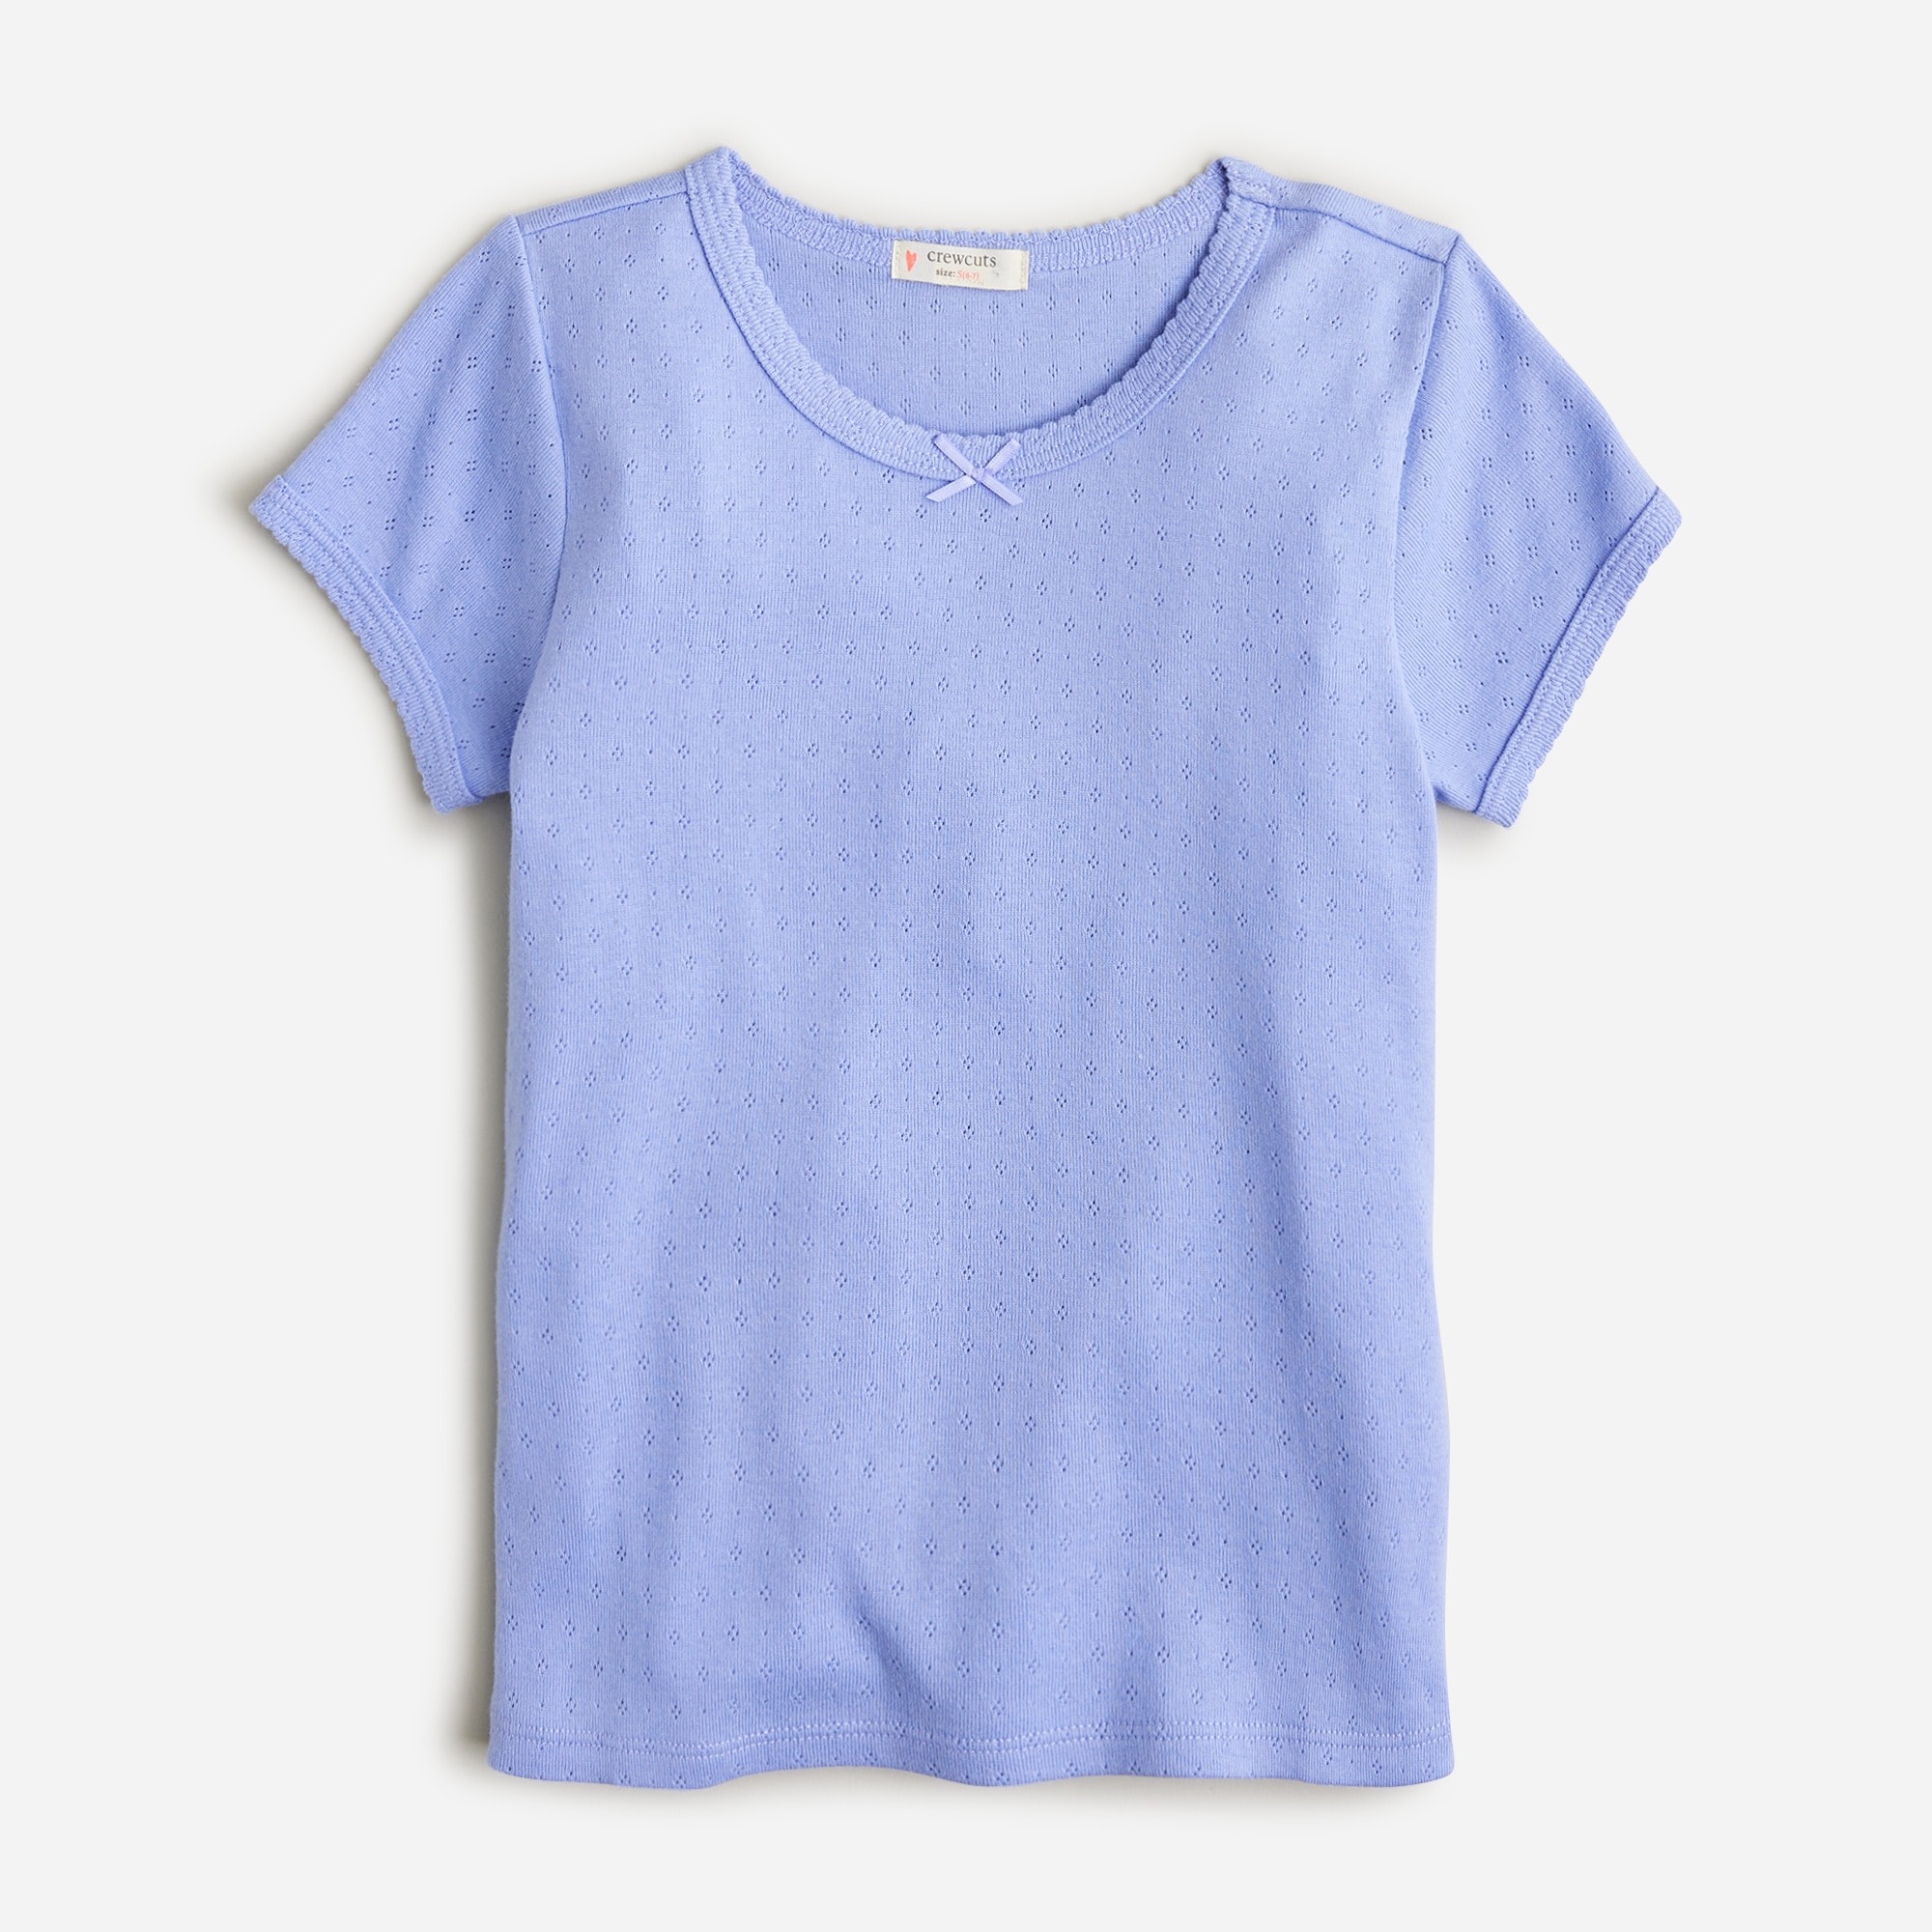  Girls' pointelle T-shirt